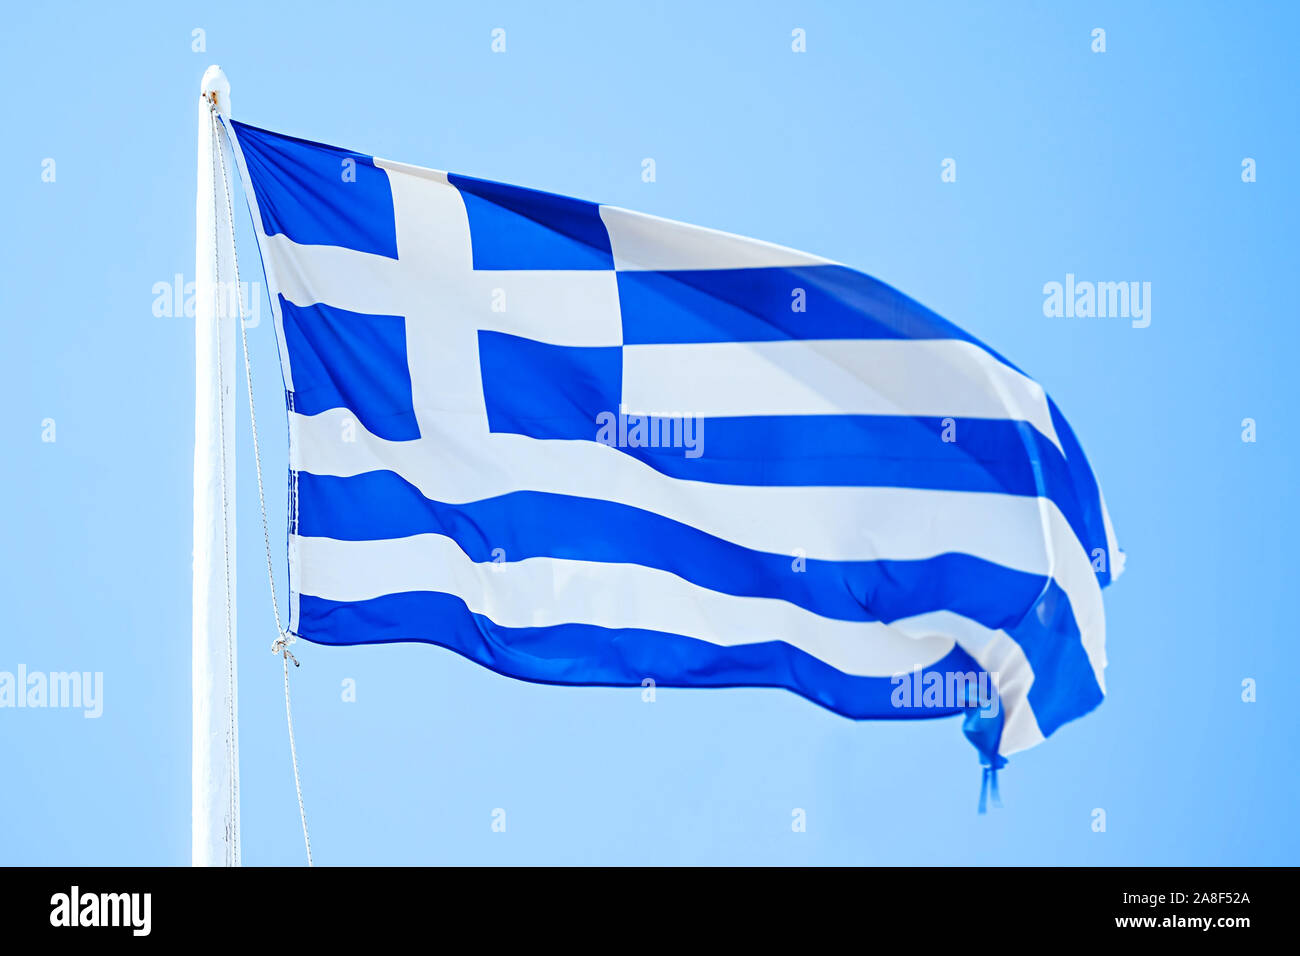 Eine Flagge griechische unter blauem Himmel, Griechische Fahne, Flaggenmast, Fahnenmast, Blauer Himmel, Foto de stock